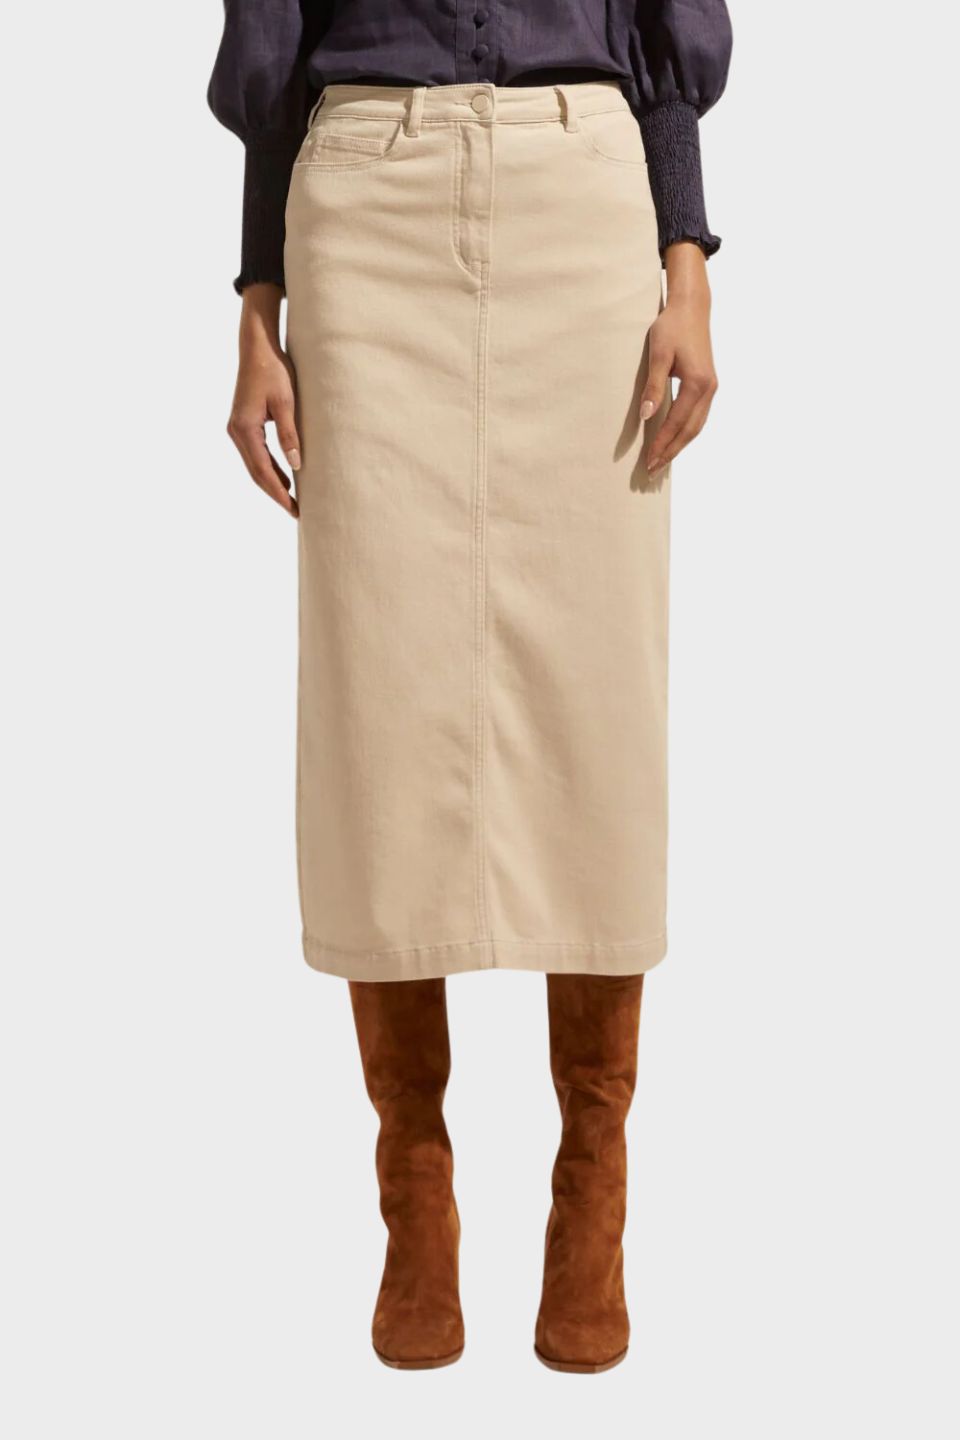 Accord Skirt